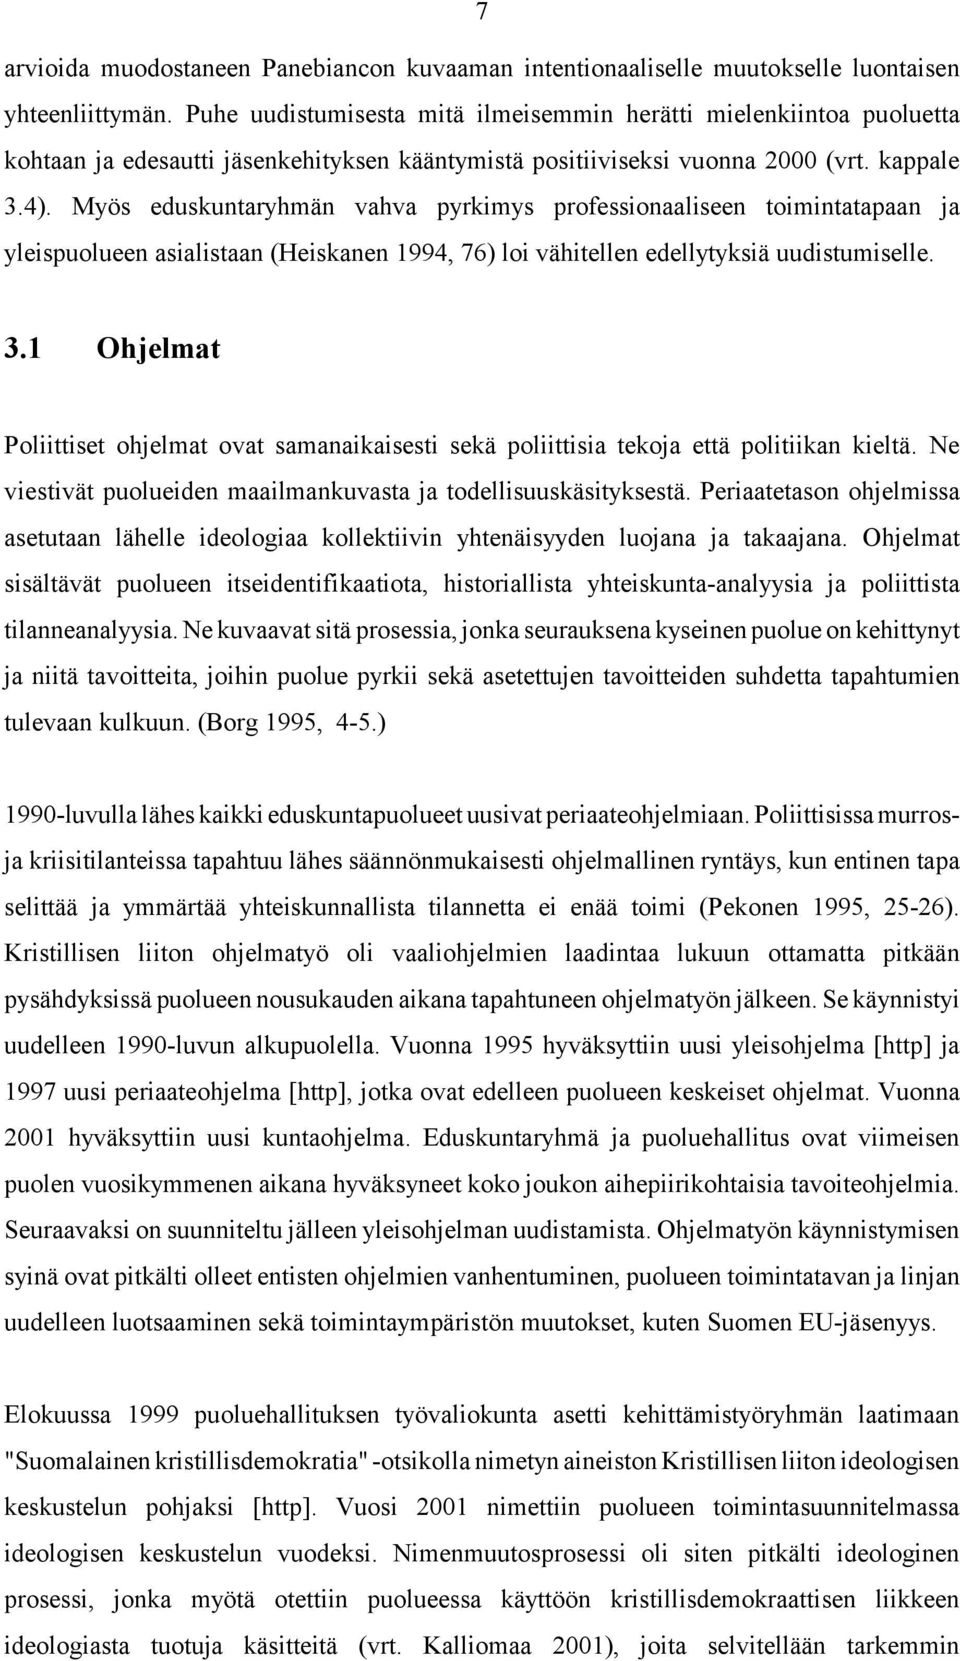 Myös eduskuntaryhmän vahva pyrkimys professionaaliseen toimintatapaan ja yleispuolueen asialistaan (Heiskanen 1994, 76) loi vähitellen edellytyksiä uudistumiselle. 3.